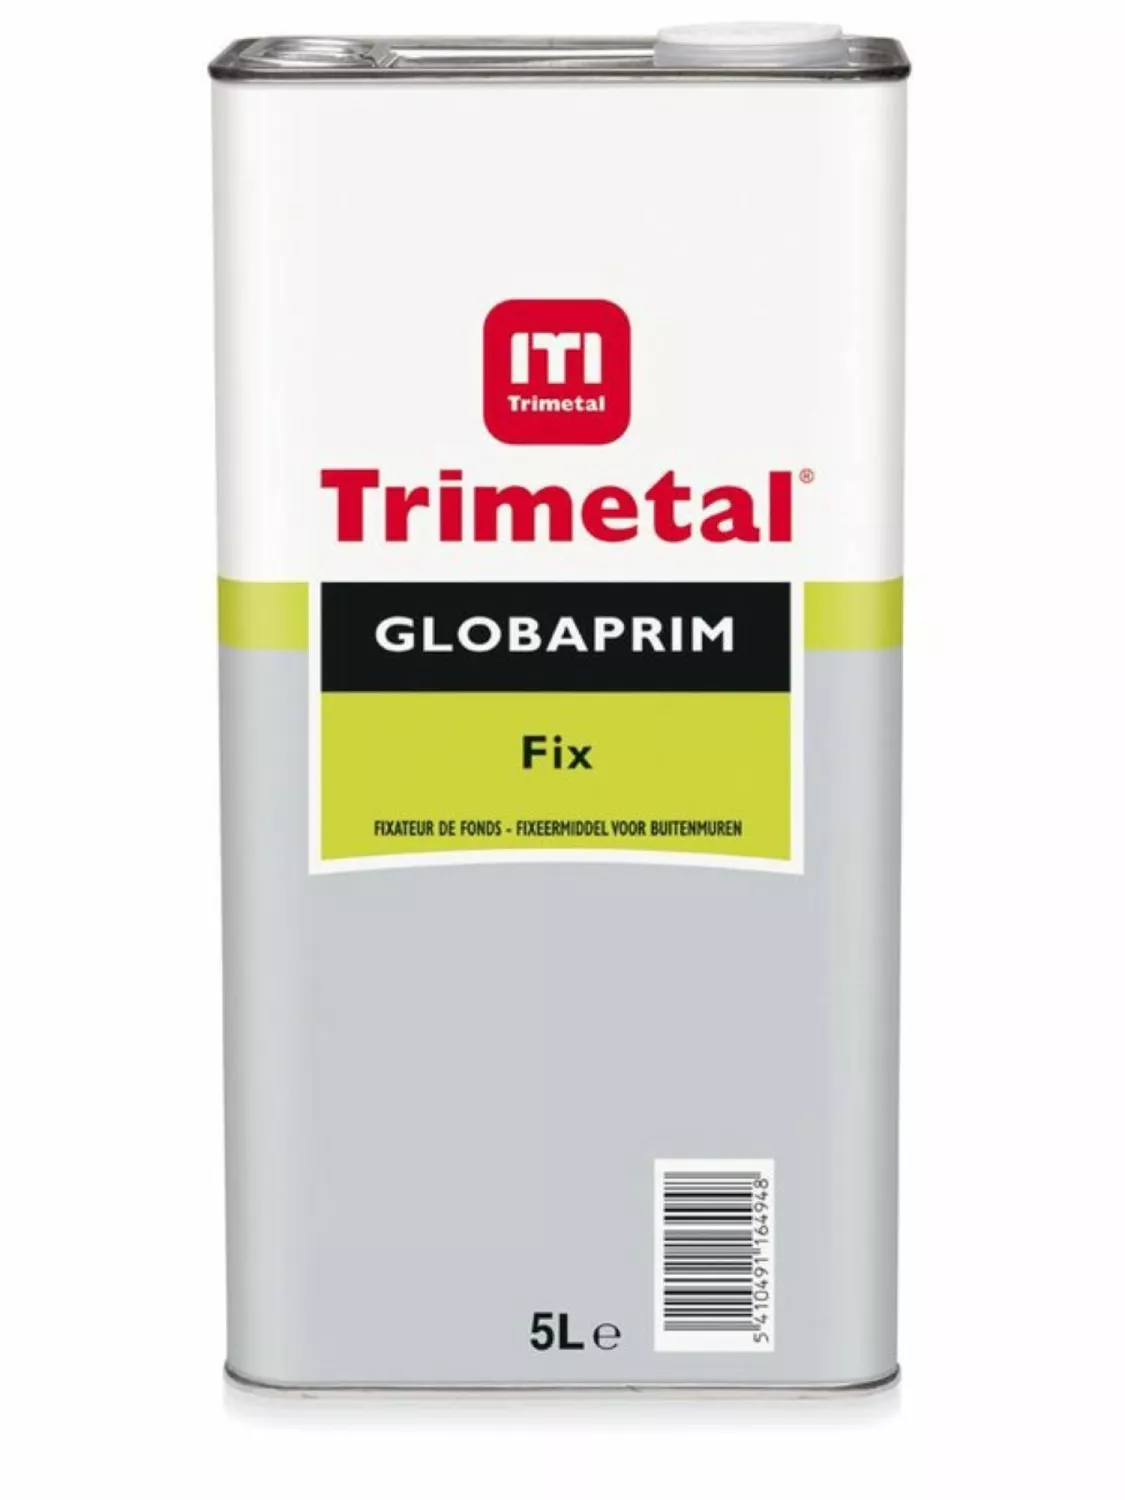 Trimetal Globaprim Fix 5L-image